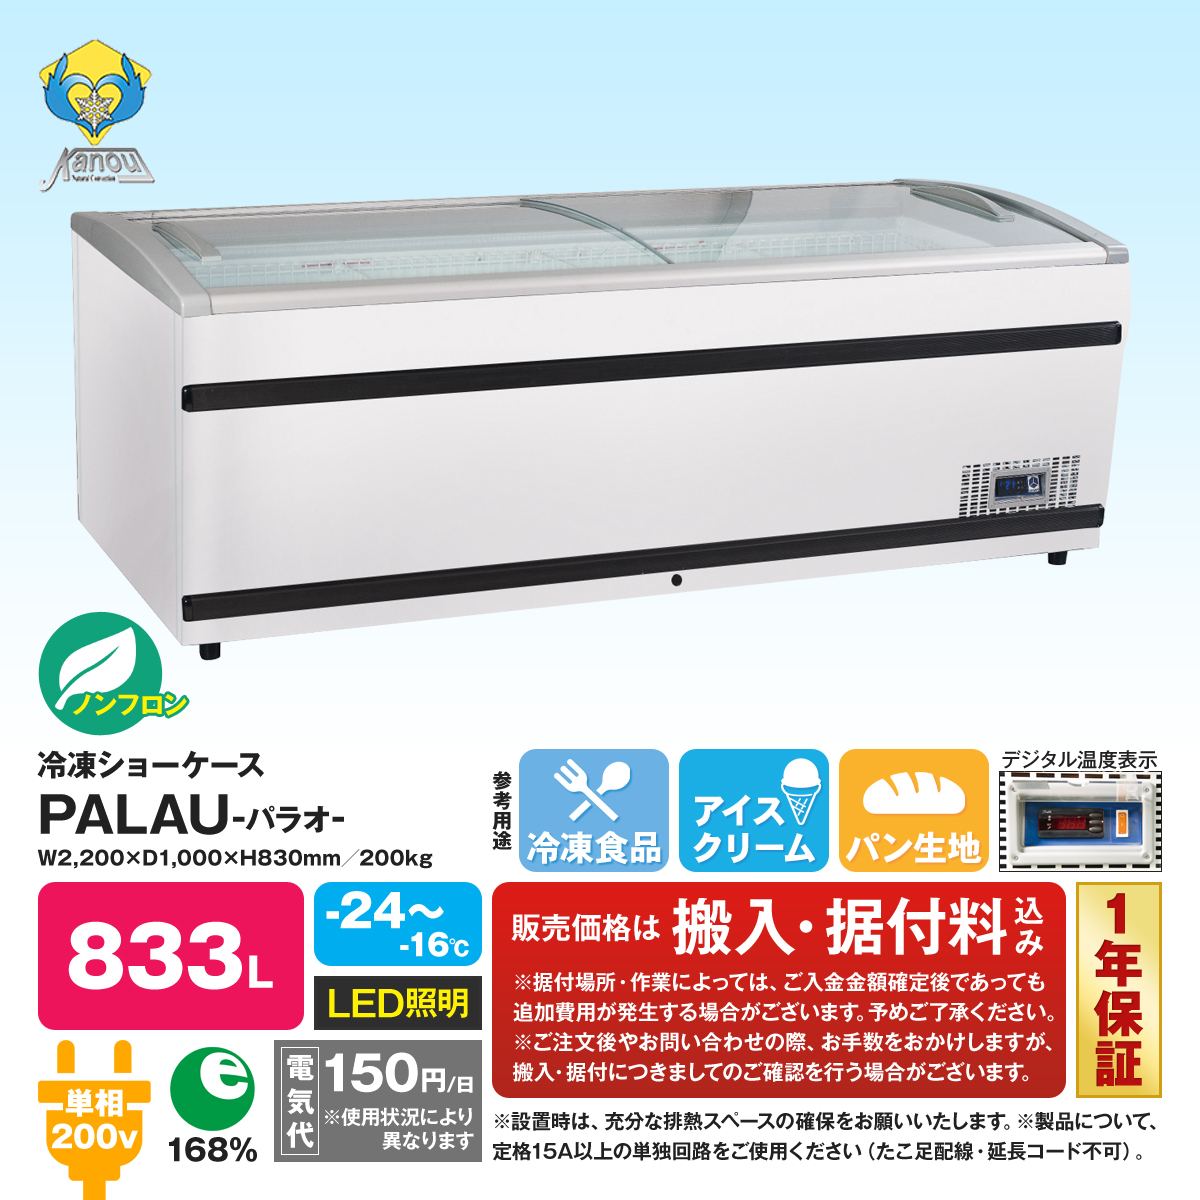 有限会社ユウキ / カノウ冷機社製 ノンフロン冷凍ショーケース『PALAU』